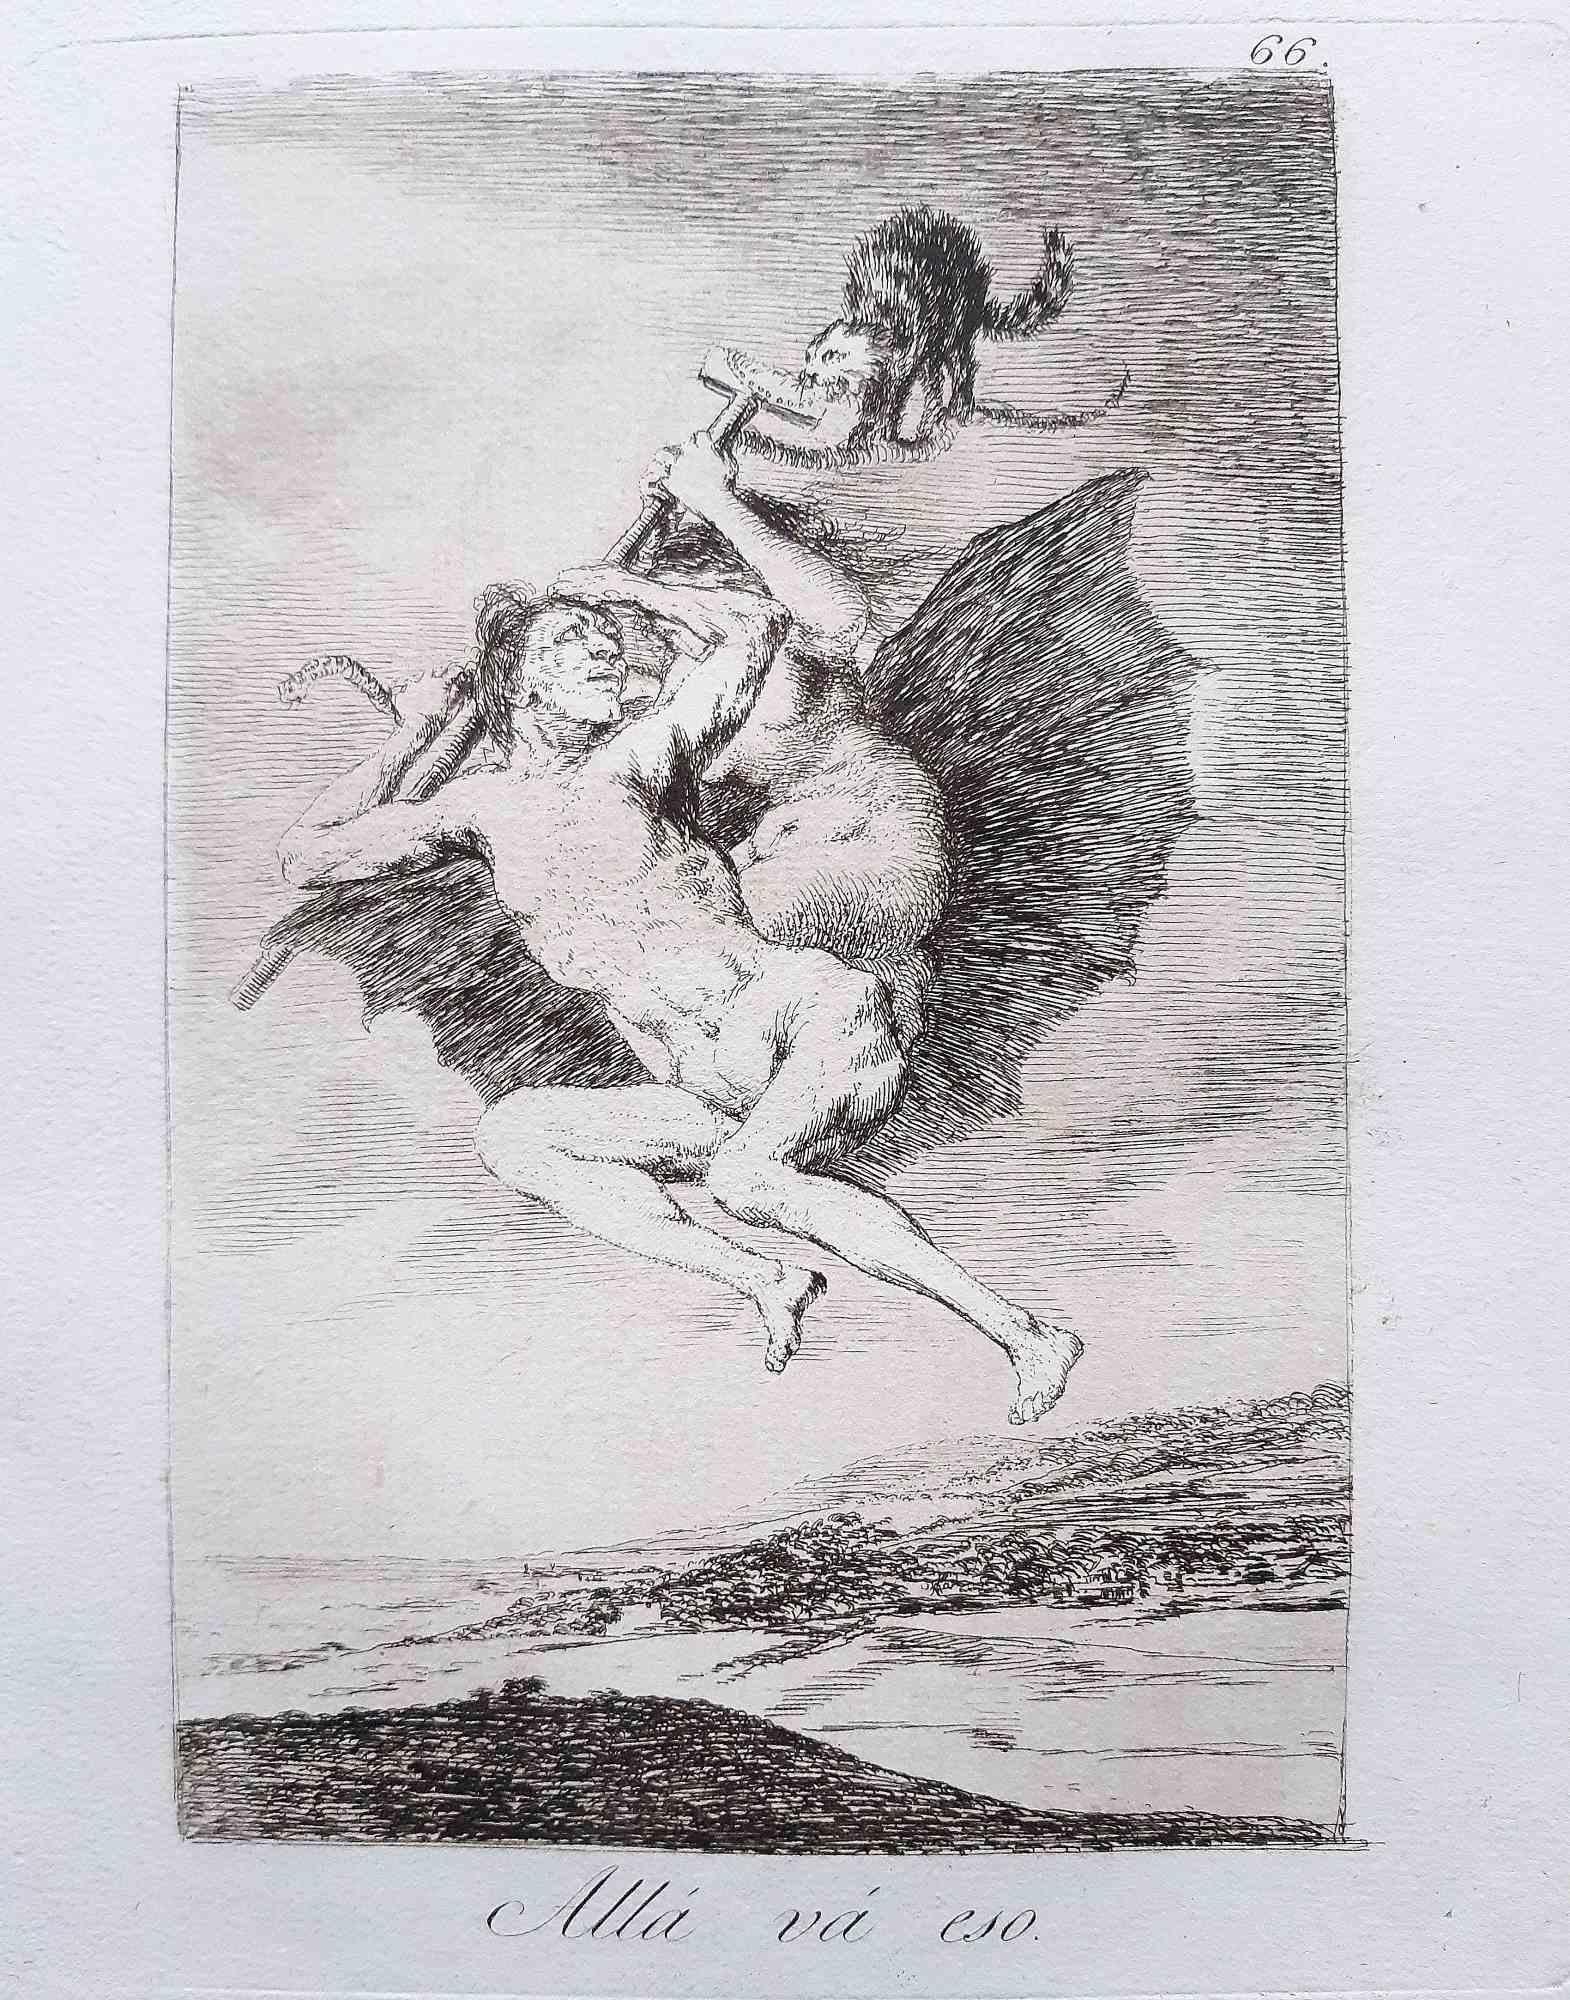 Allà Và Eso de Los Caprichos  est une œuvre d'art originale réalisée par l'artiste Francisco Goya et publiée pour la première fois en 1799.

Eau-forte et aquatinte sur papier.

Cette gravure fait partie de la première édition de "Los Caprichos"